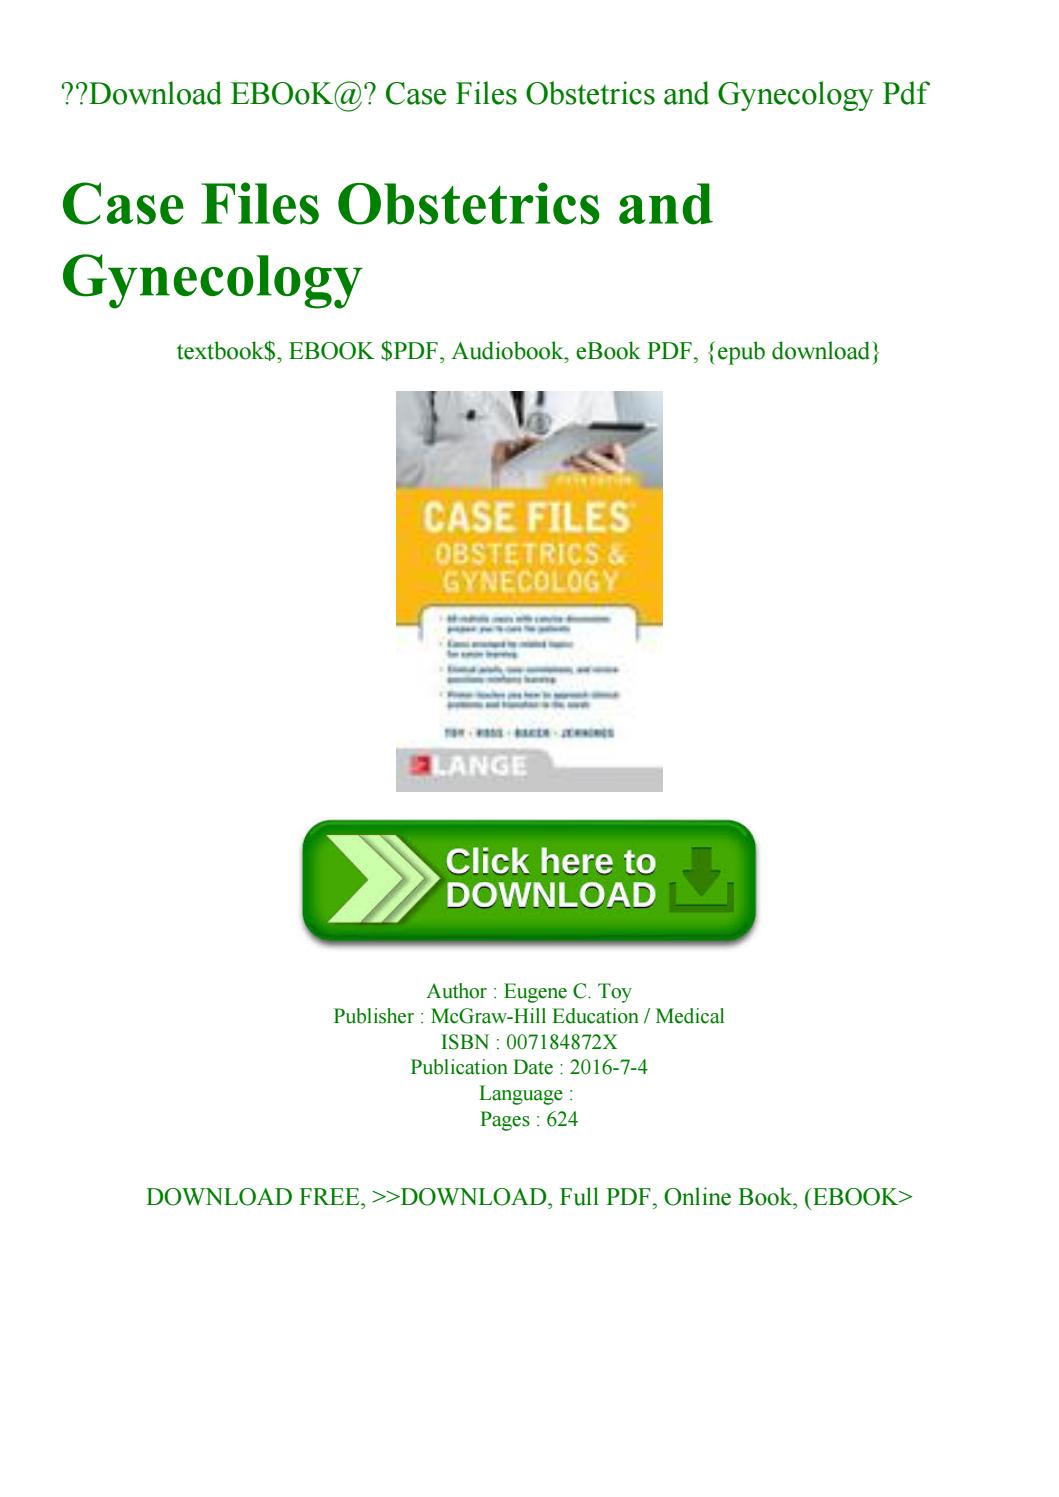 Dc dutta obstetrics pdf free